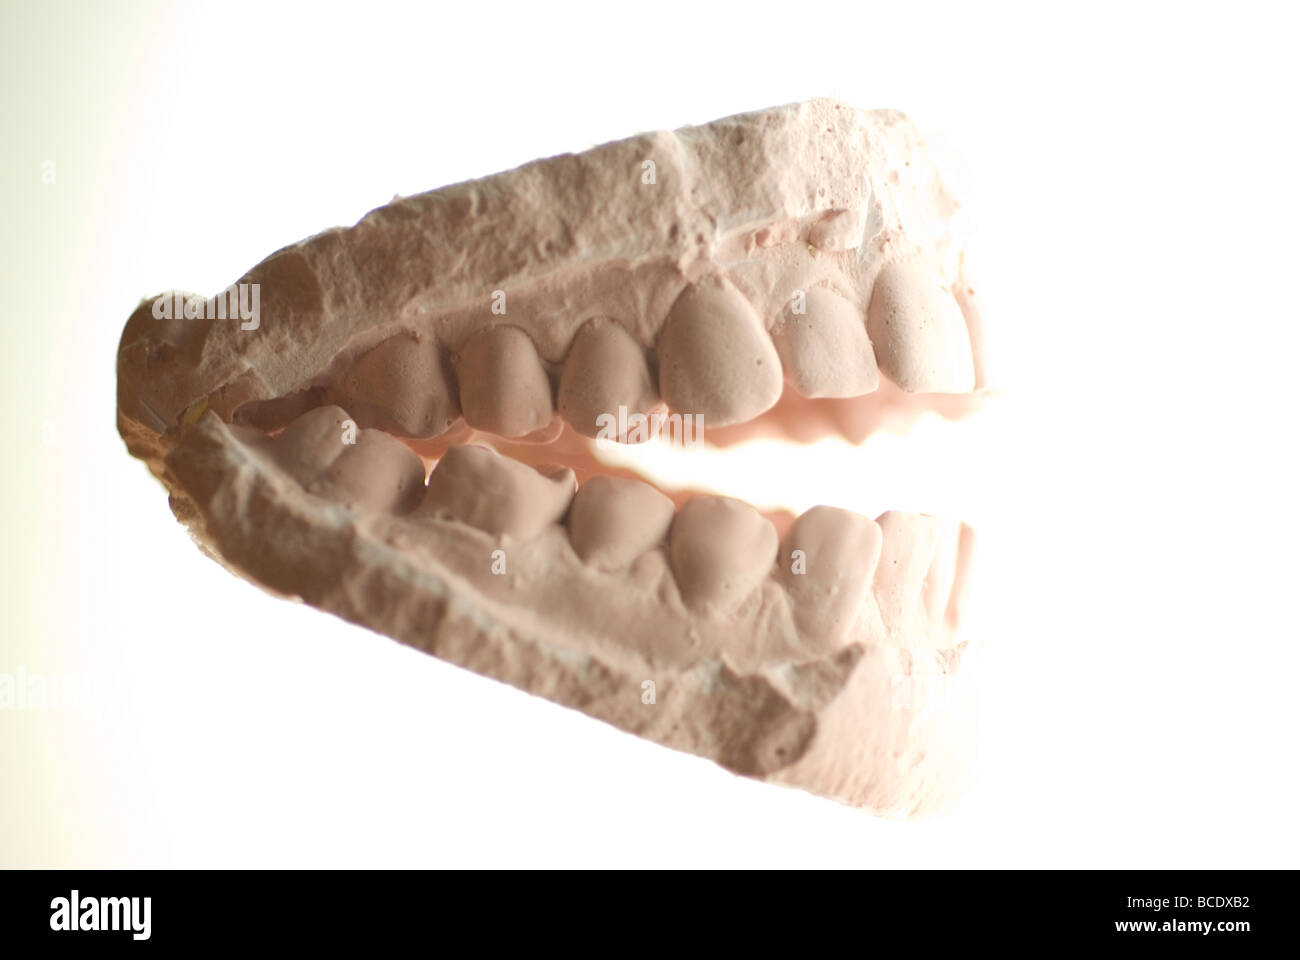 dental cast plaster model Stock Photo